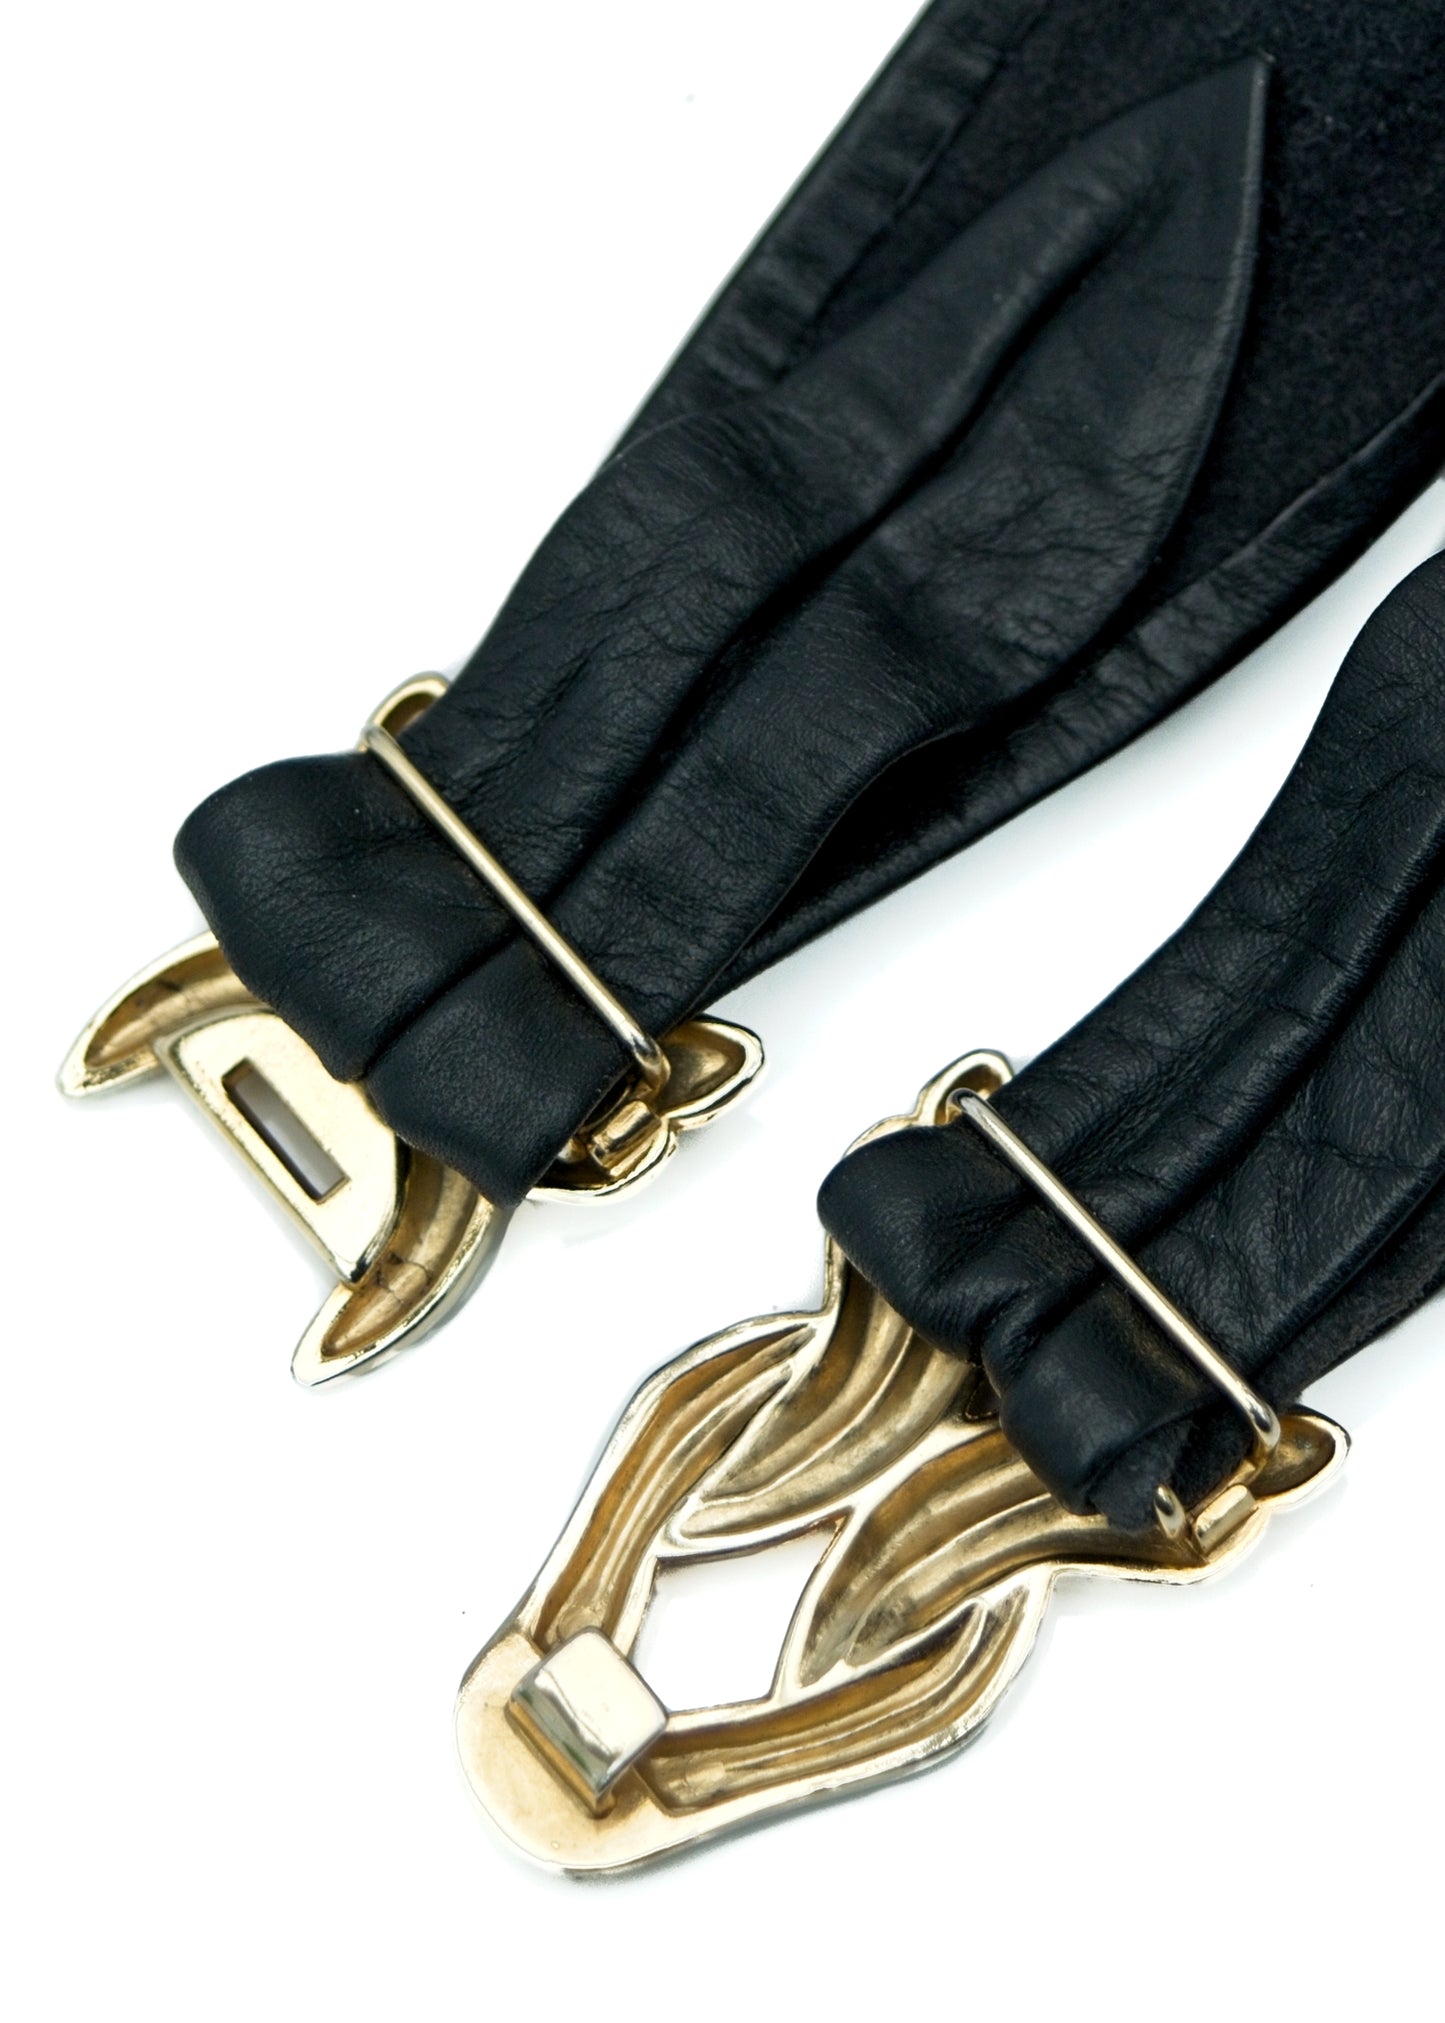 Vintage Leather Cincher Belt with Goldtone Buckle • Adjustable